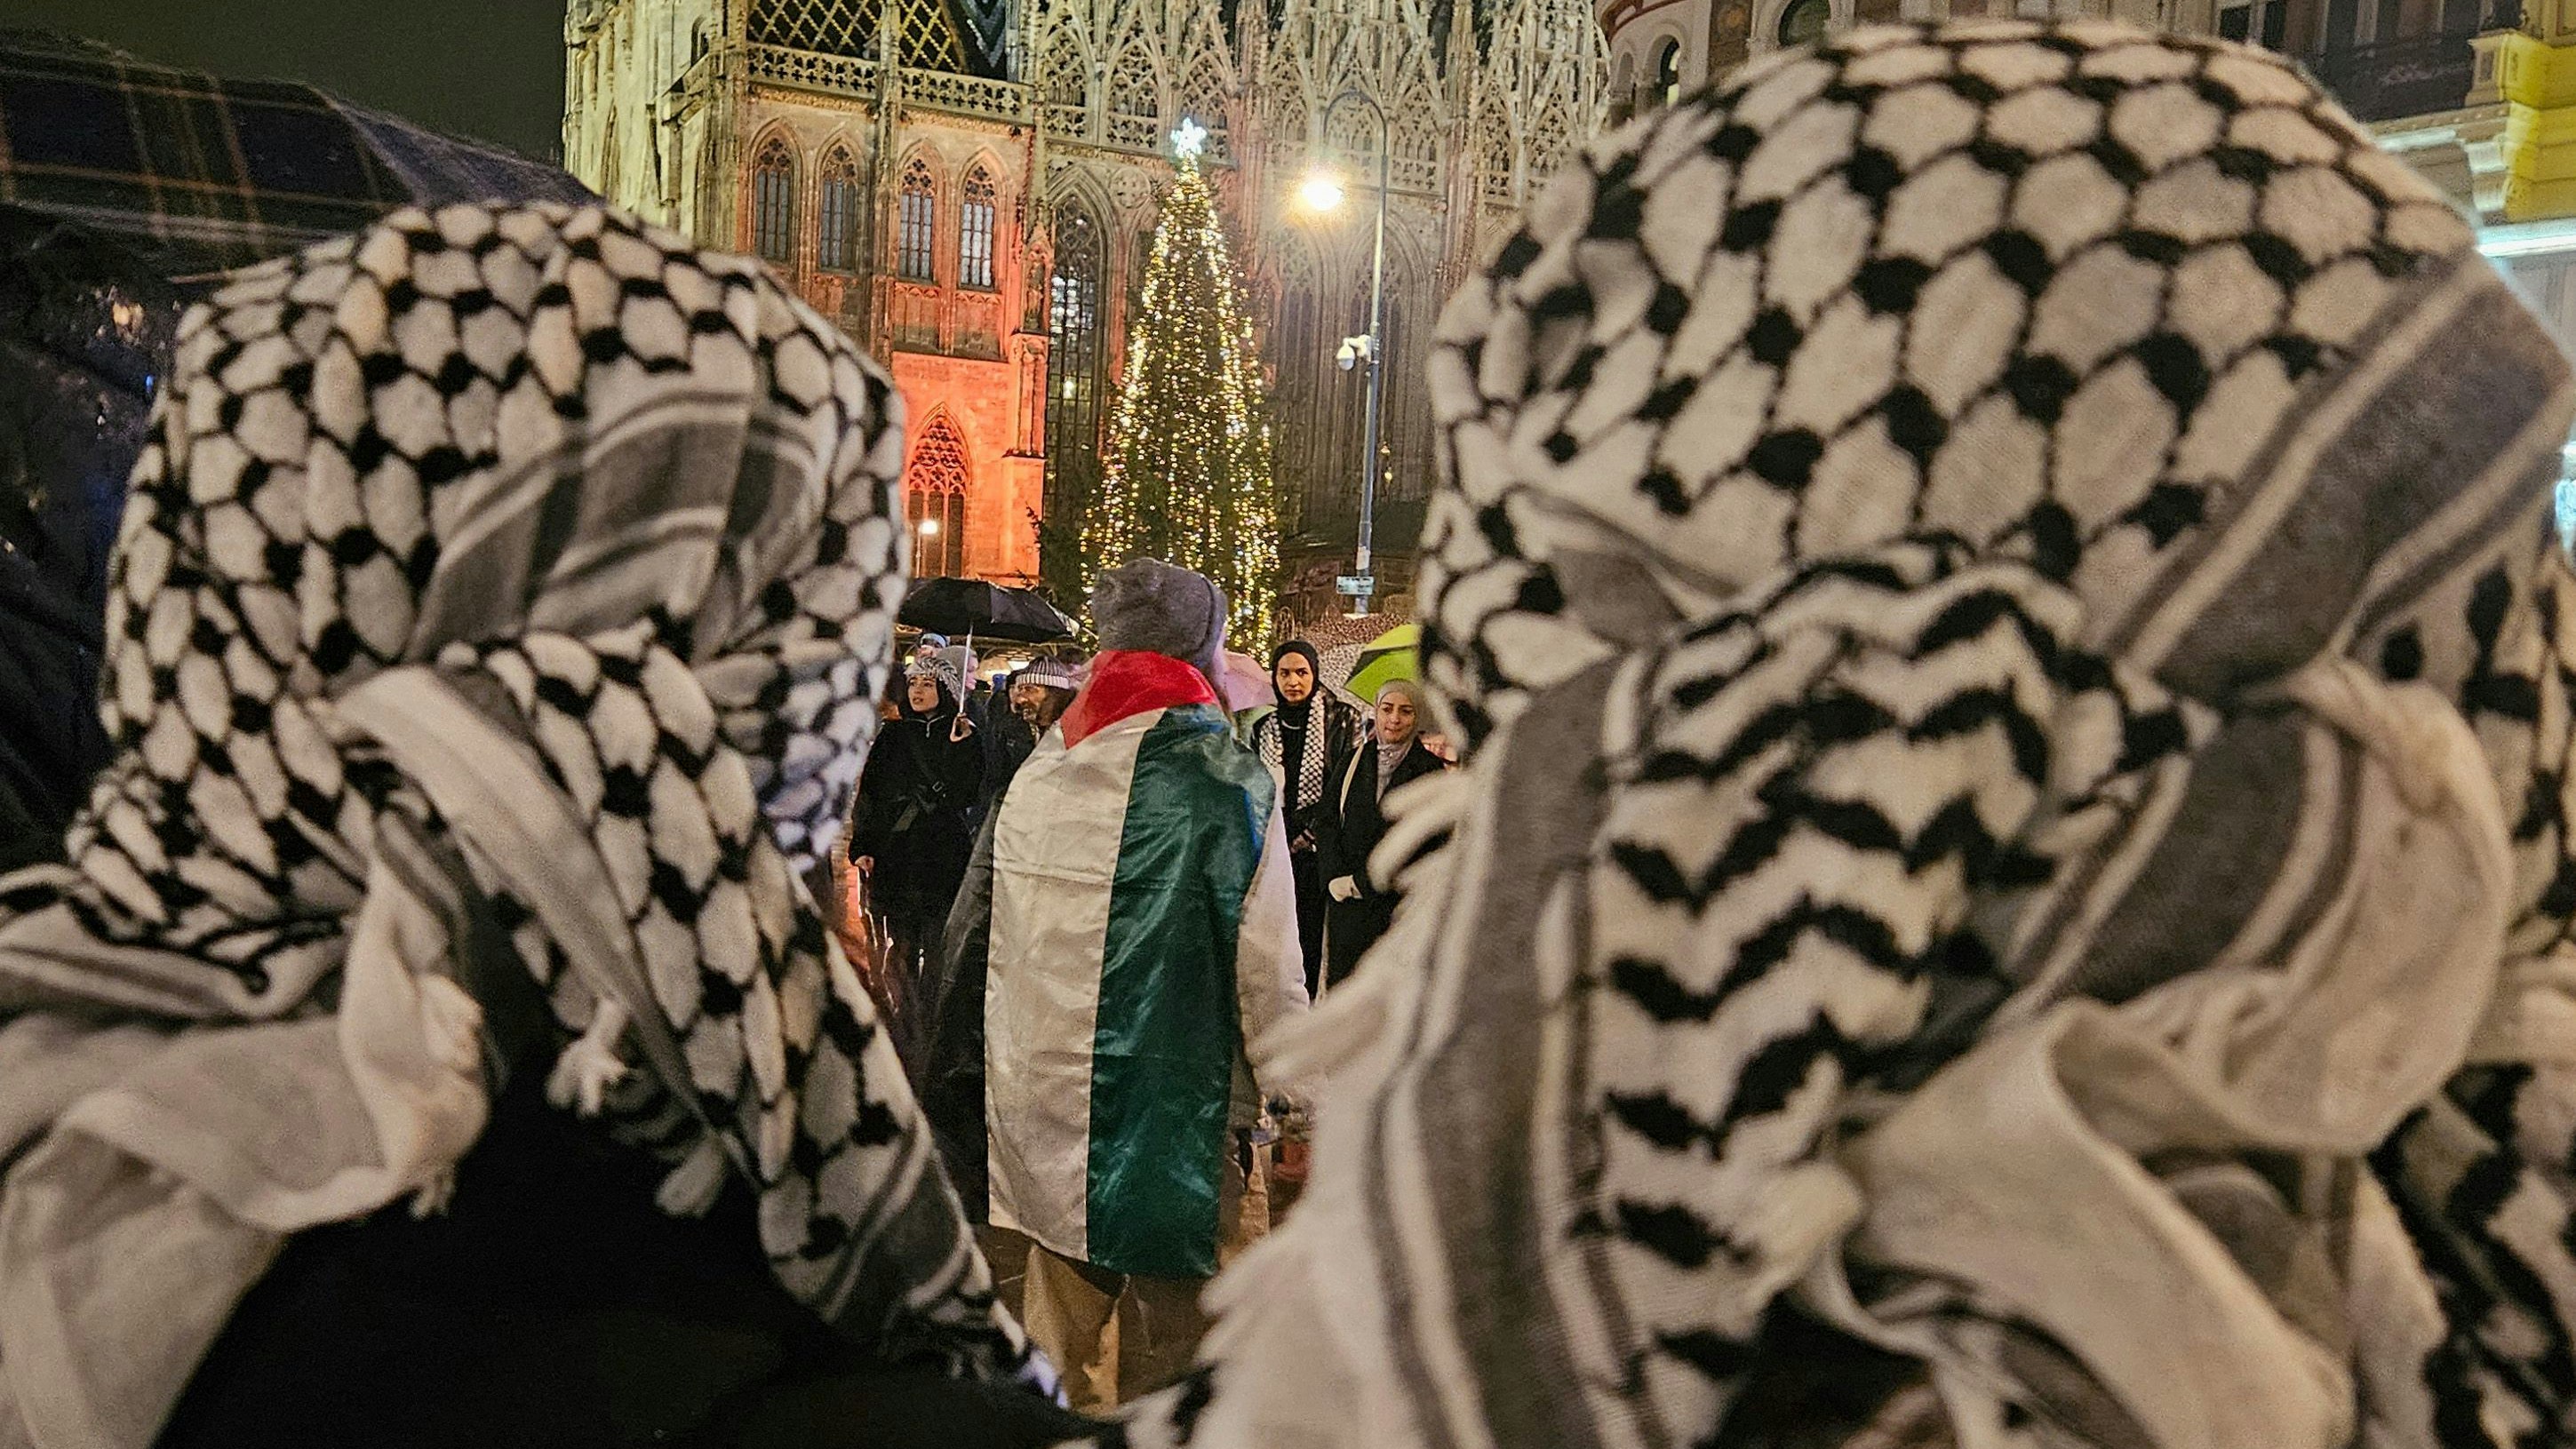 Palästinenser-Demo am Stephansplatz: "Das Aufstacheln zum Hass sollte bei uns nicht nur theoretisch untersagt sein"